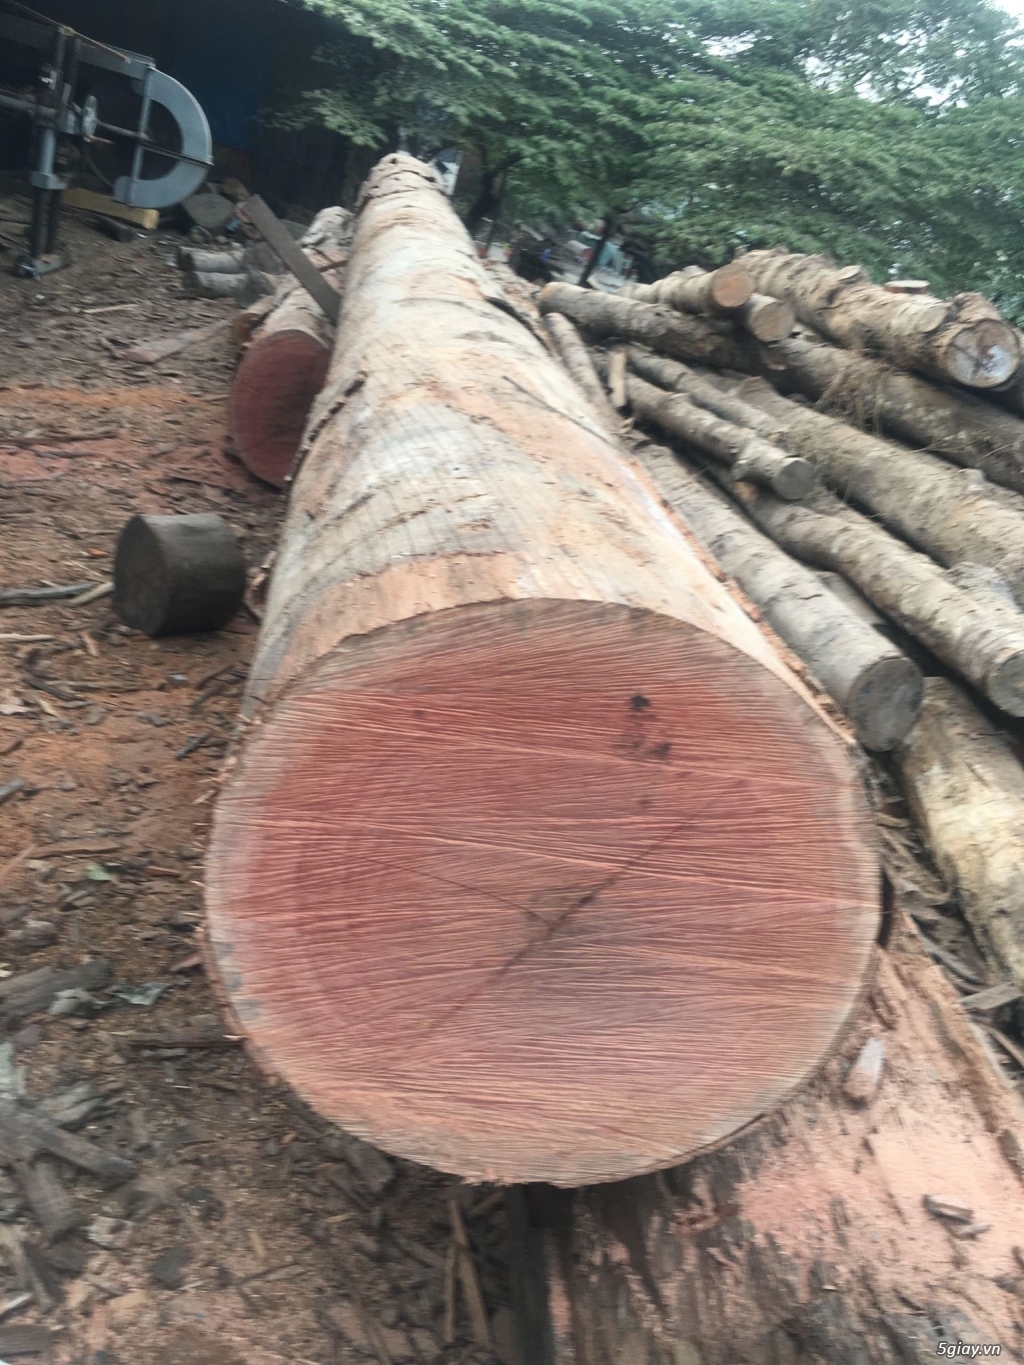 xưởng gỗ chuyên sản xuất các loại gỗ xẻ theo yêu cầu - 1